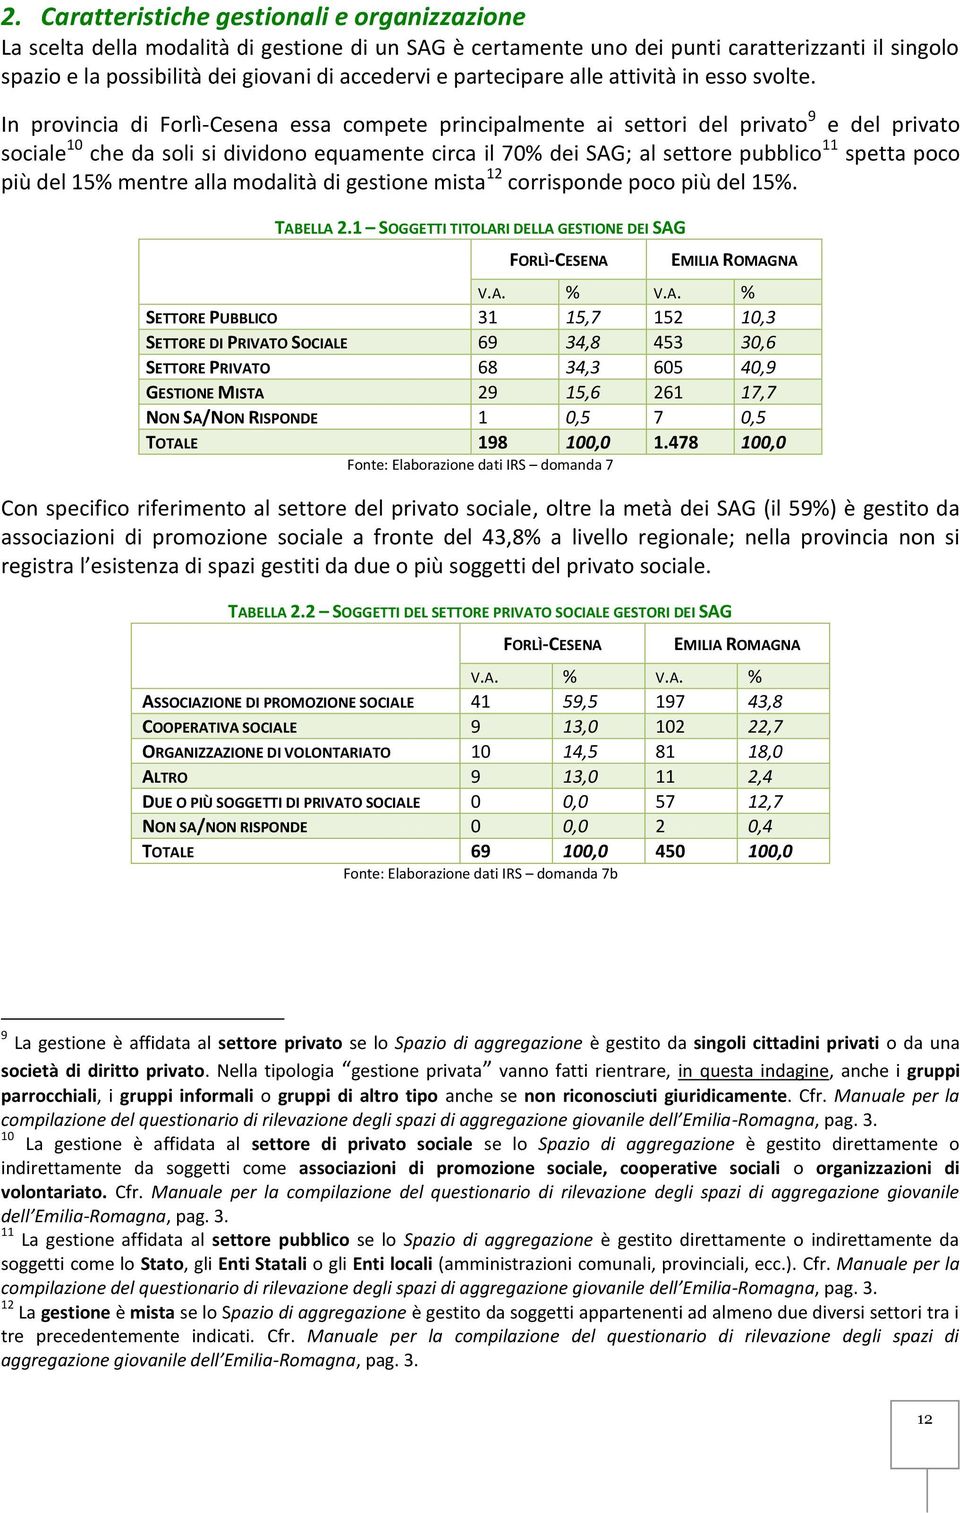 In provincia di Forlì-Cesena essa compete principalmente ai settori del privato 9 e del privato sociale 10 che da soli si dividono equamente circa il 70% dei SAG; al settore pubblico 11 spetta poco